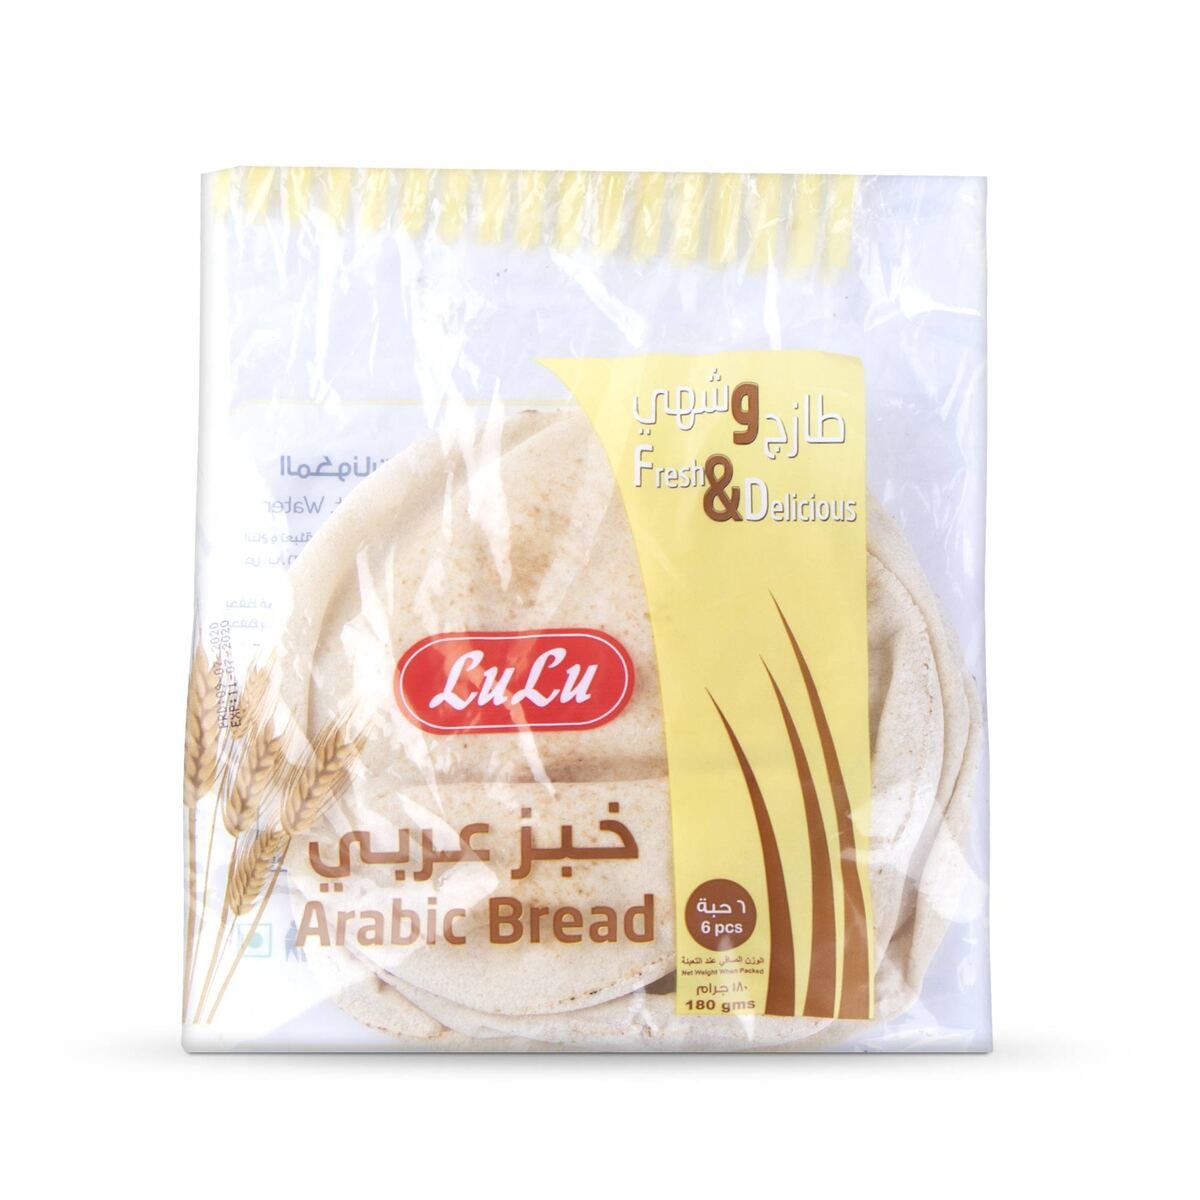 LuLu Arabic Bread Small 6 pcs